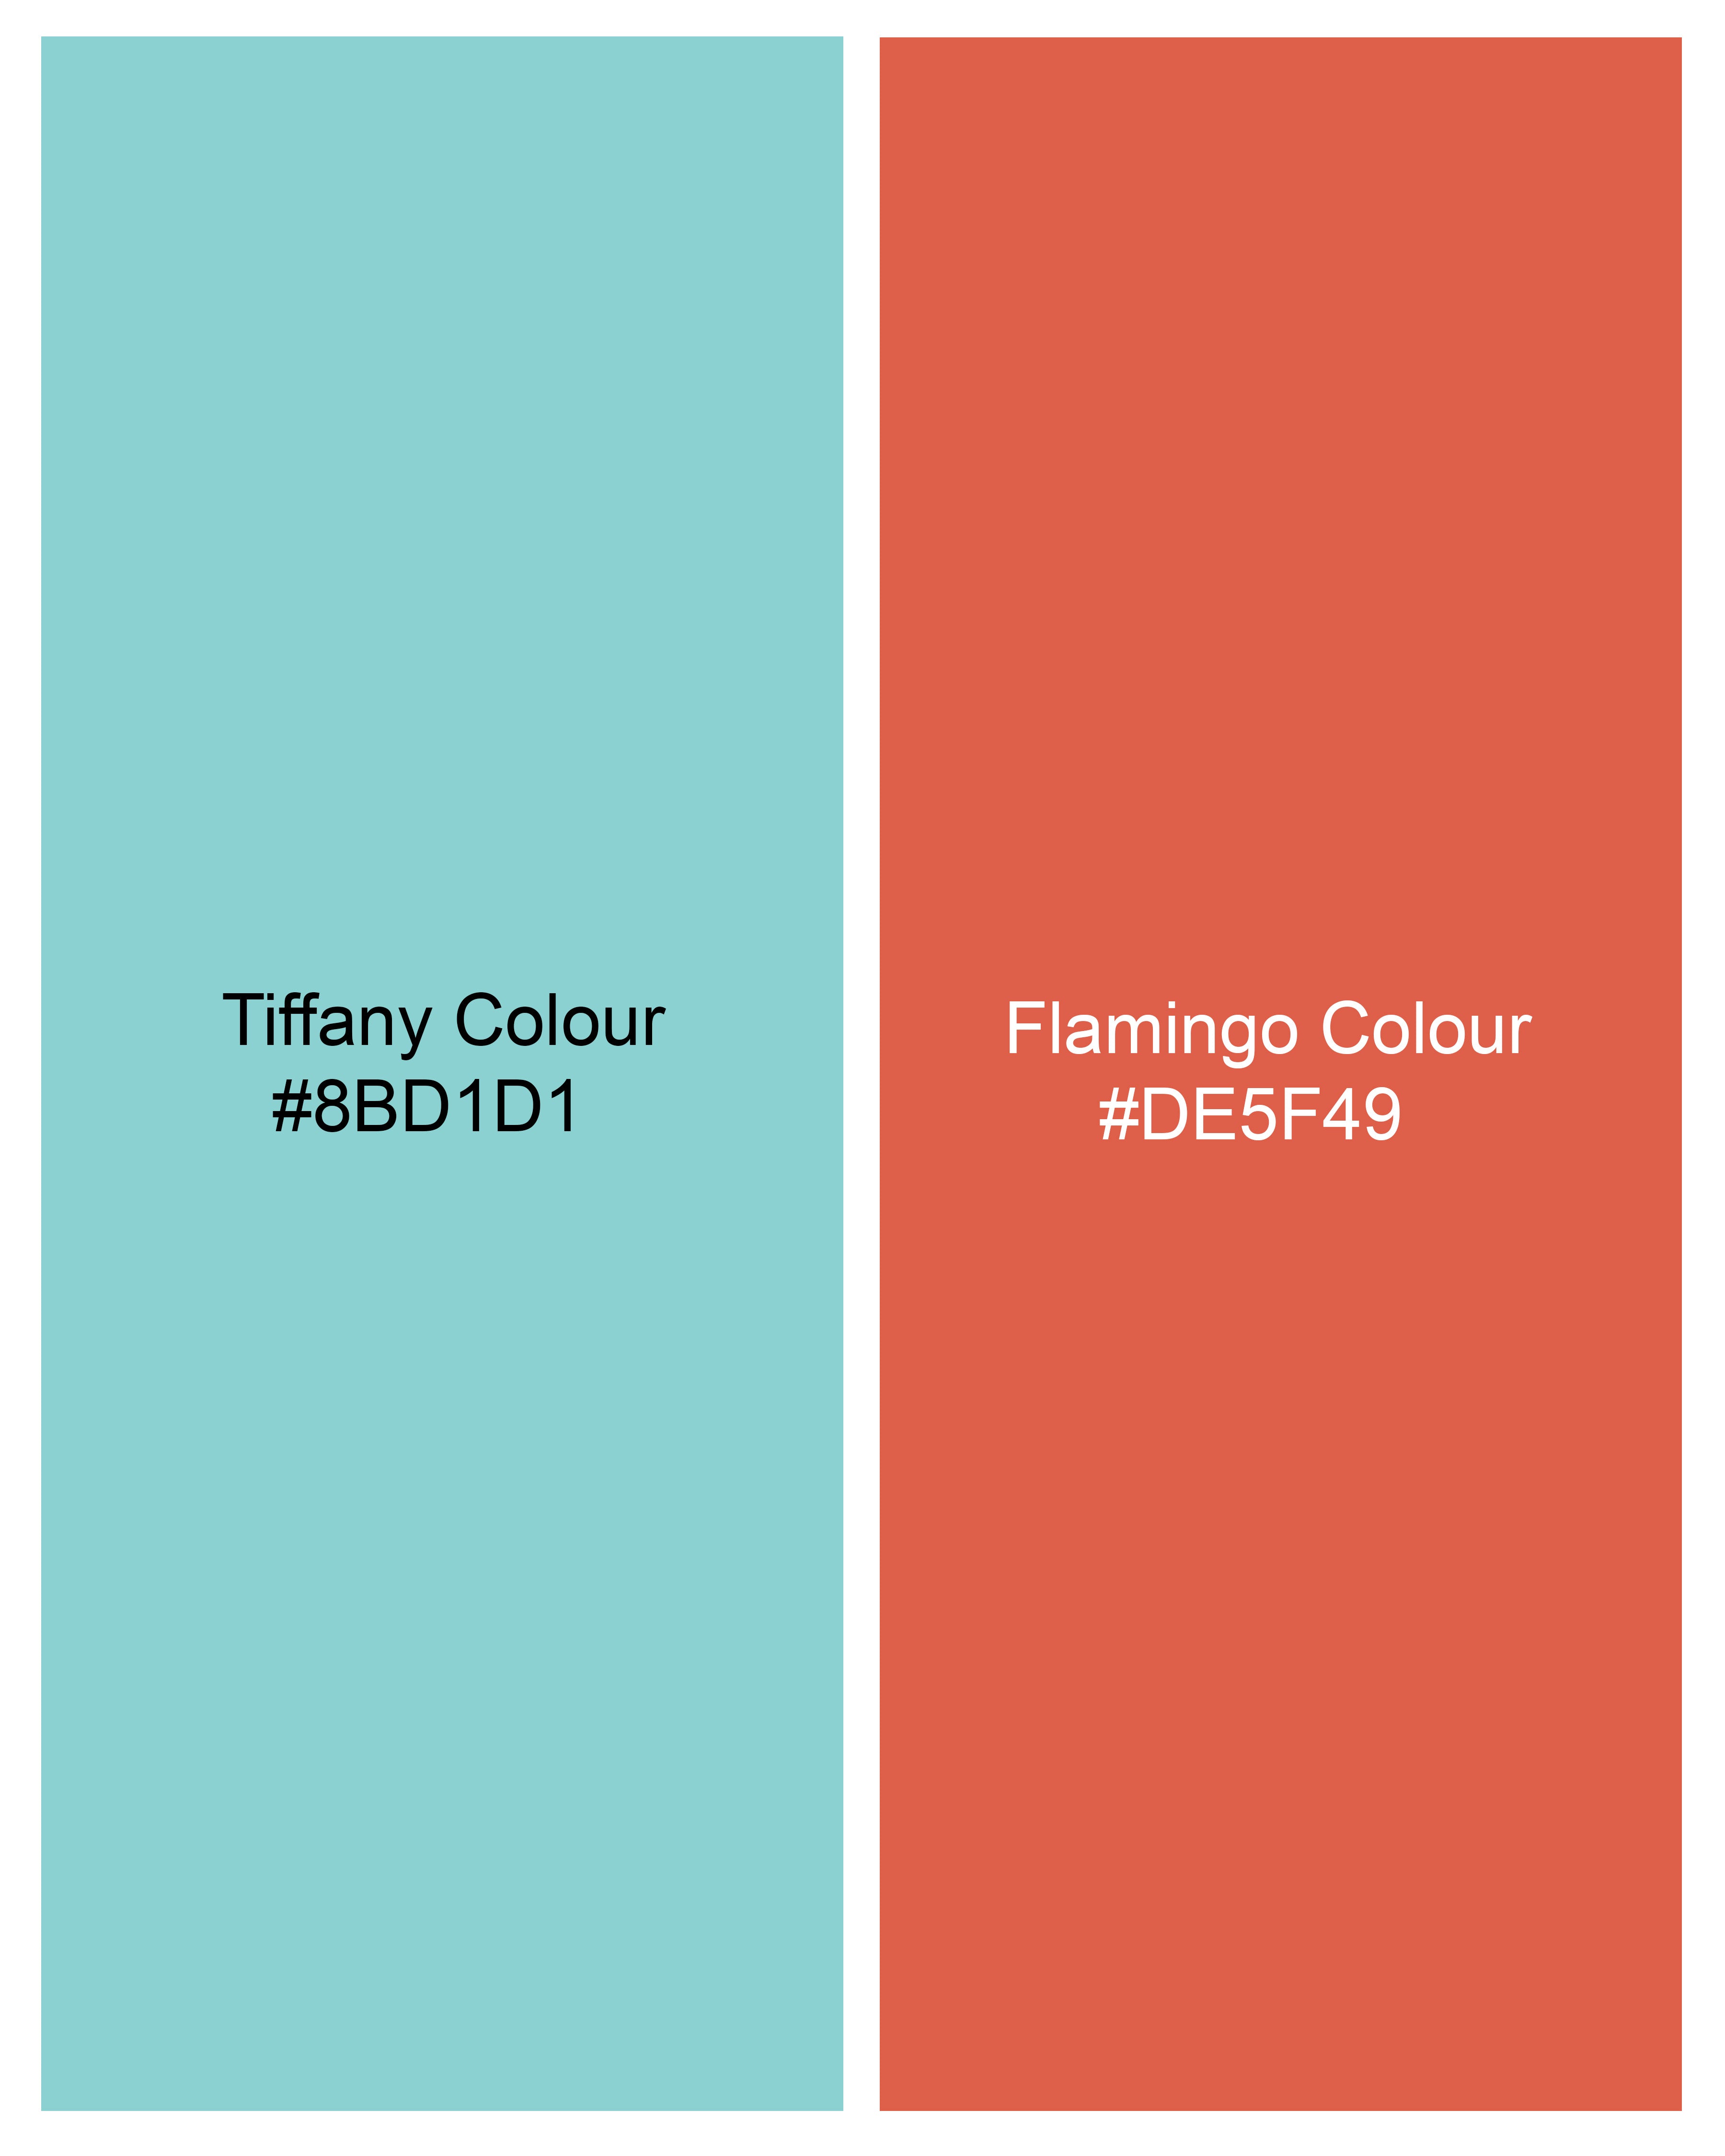 Tiffany Blue with Flamingo Red Printed Premium Cotton Mandarin Collar Designer Shirt 9094-P387-38, 9094-P387-H-38, 9094-P387-39, 9094-P387-H-39, 9094-P387-40, 9094-P387-H-40, 9094-P387-42, 9094-P387-H-42, 9094-P387-44, 9094-P387-H-44, 9094-P387-46, 9094-P387-H-46, 9094-P387-48, 9094-P387-H-48, 9094-P387-50, 9094-P387-H-50, 9094-P387-52, 9094-P387-H-52